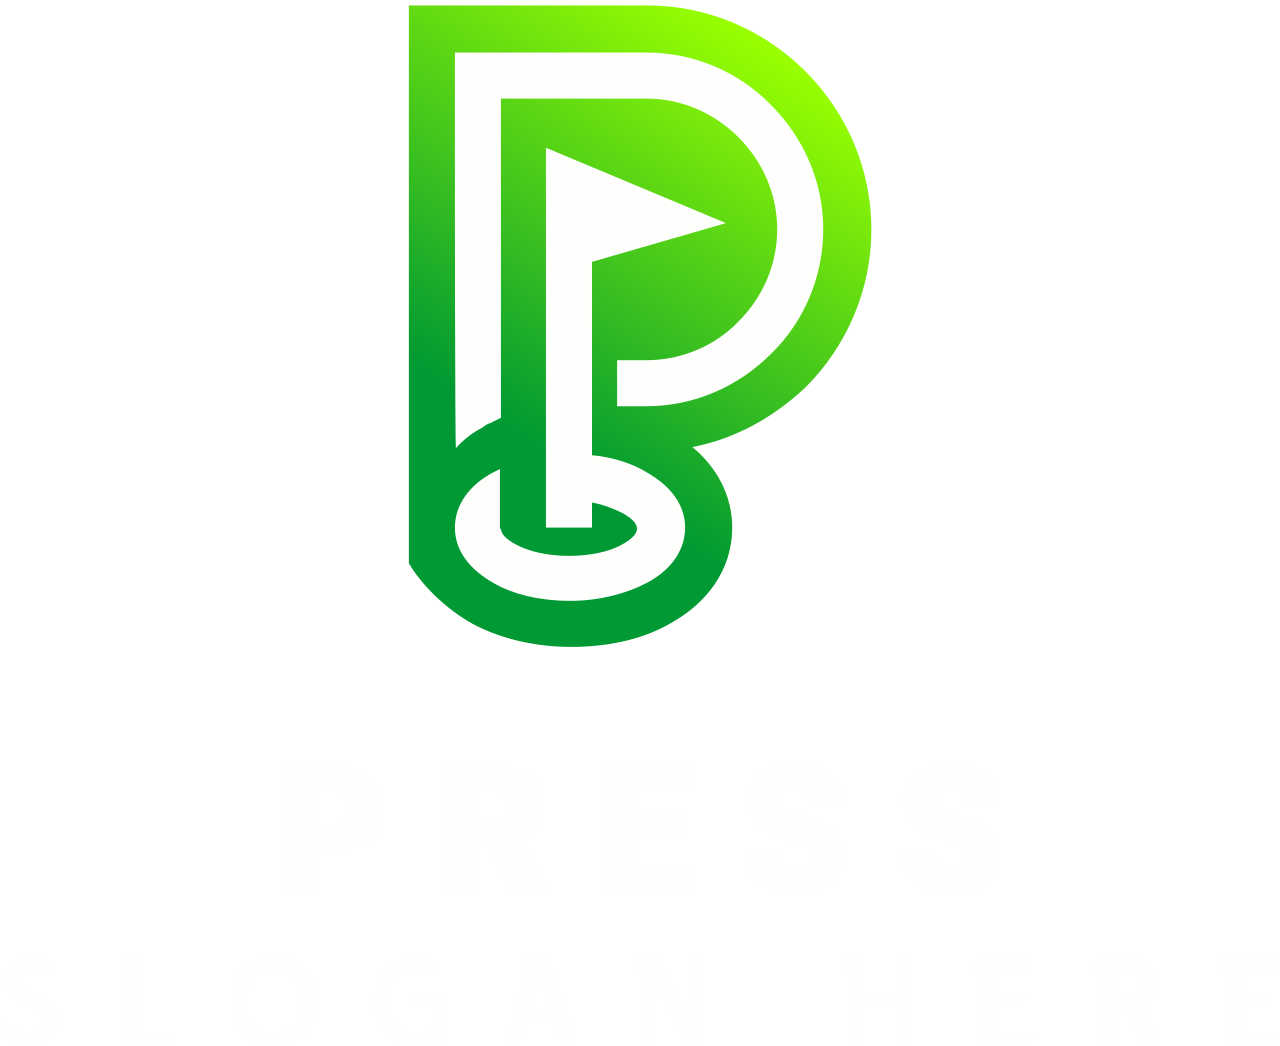 Press's logo